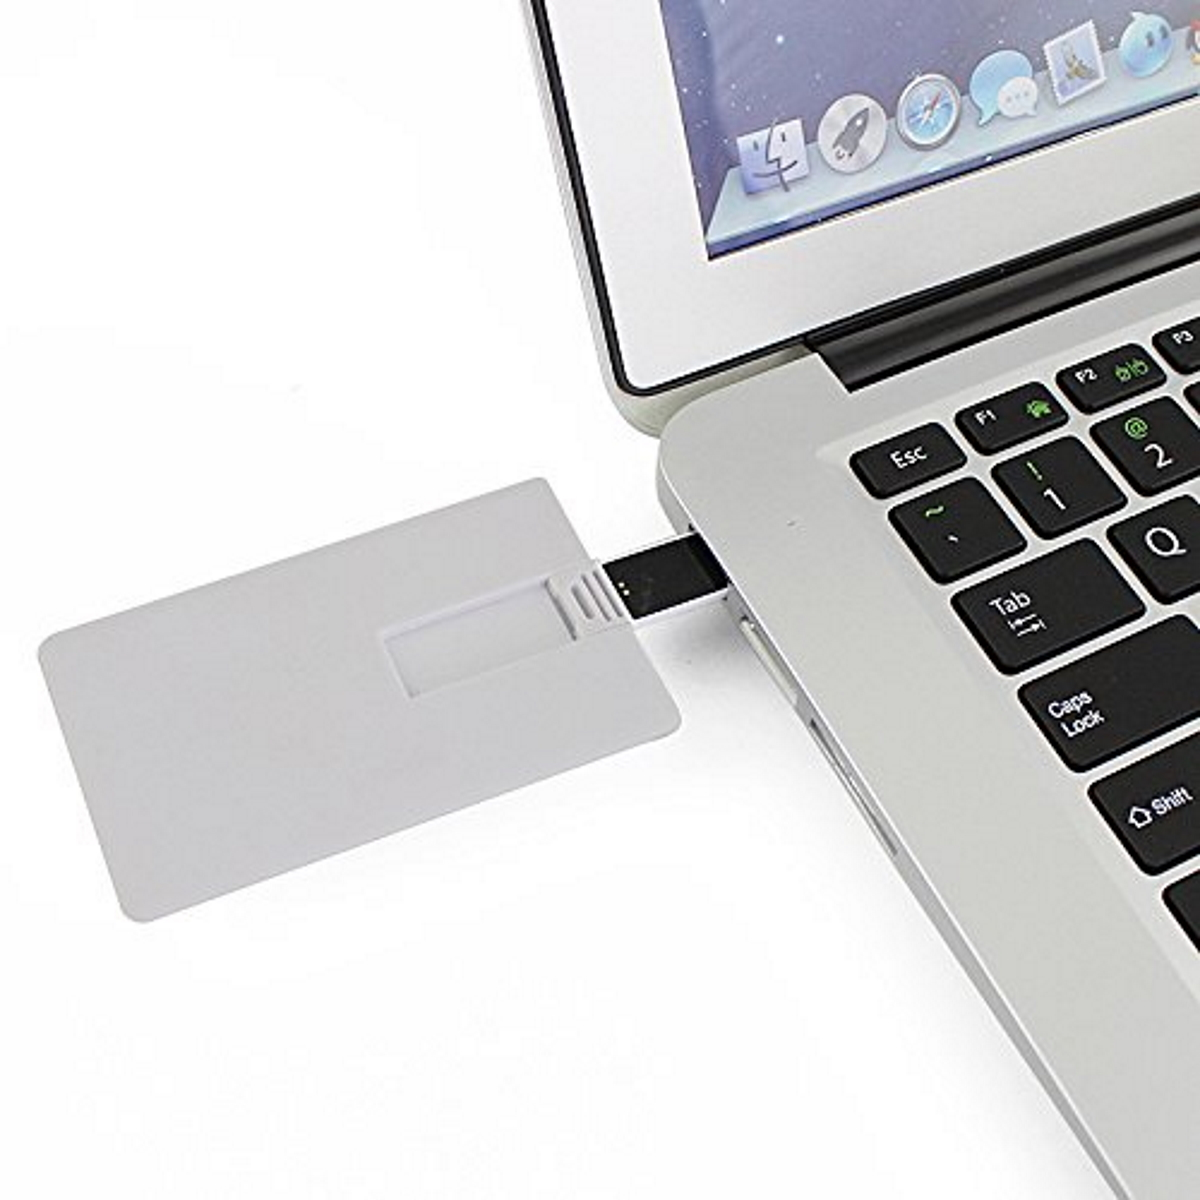 ® GB) (Weiss, GERMANY USB-Stick Kreditkarte 4 USB